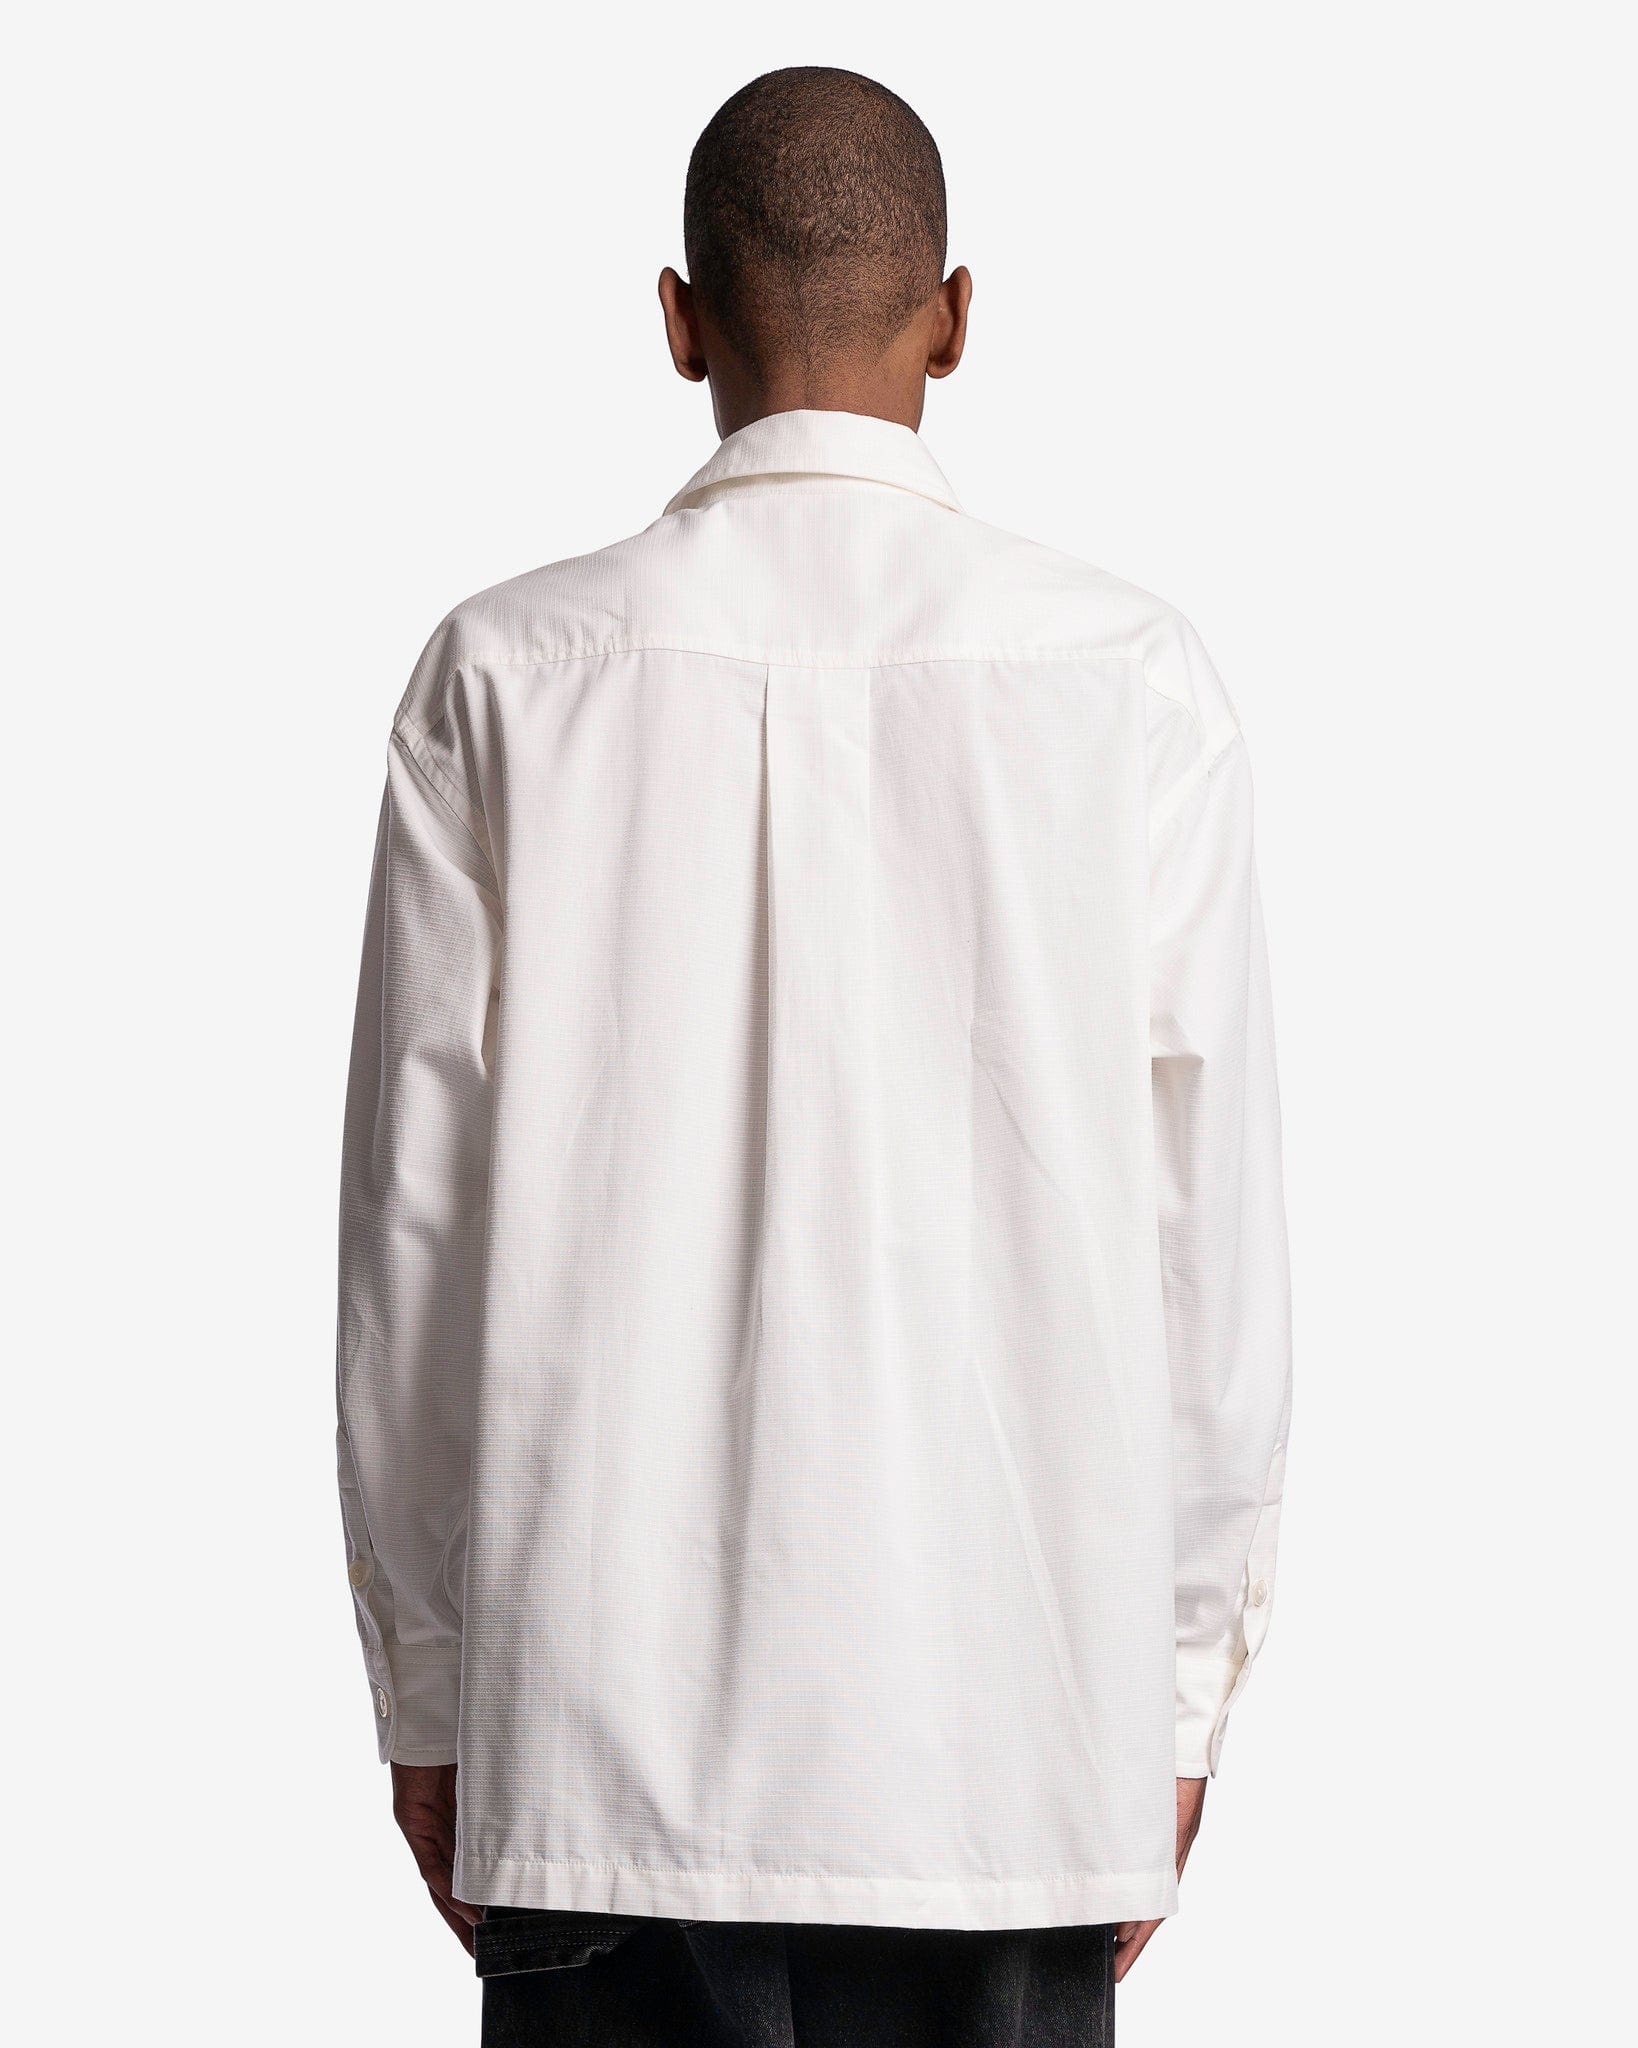 Boke Crest Oversized Shirt in Off White